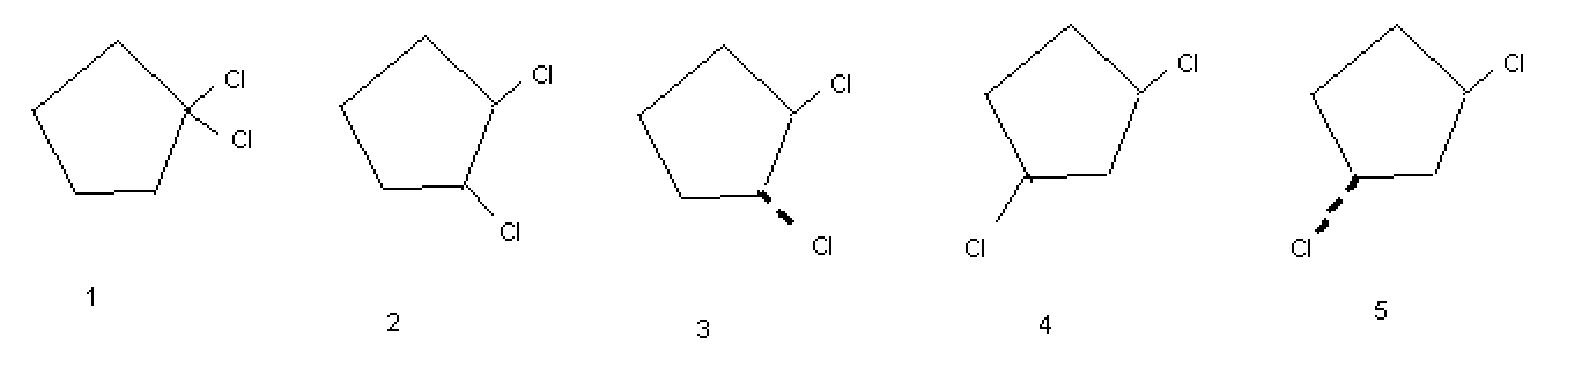 1,1-dichlorocyclopentane (1) (Z)-1,2-dichlorocyclopentane (2) (E)...